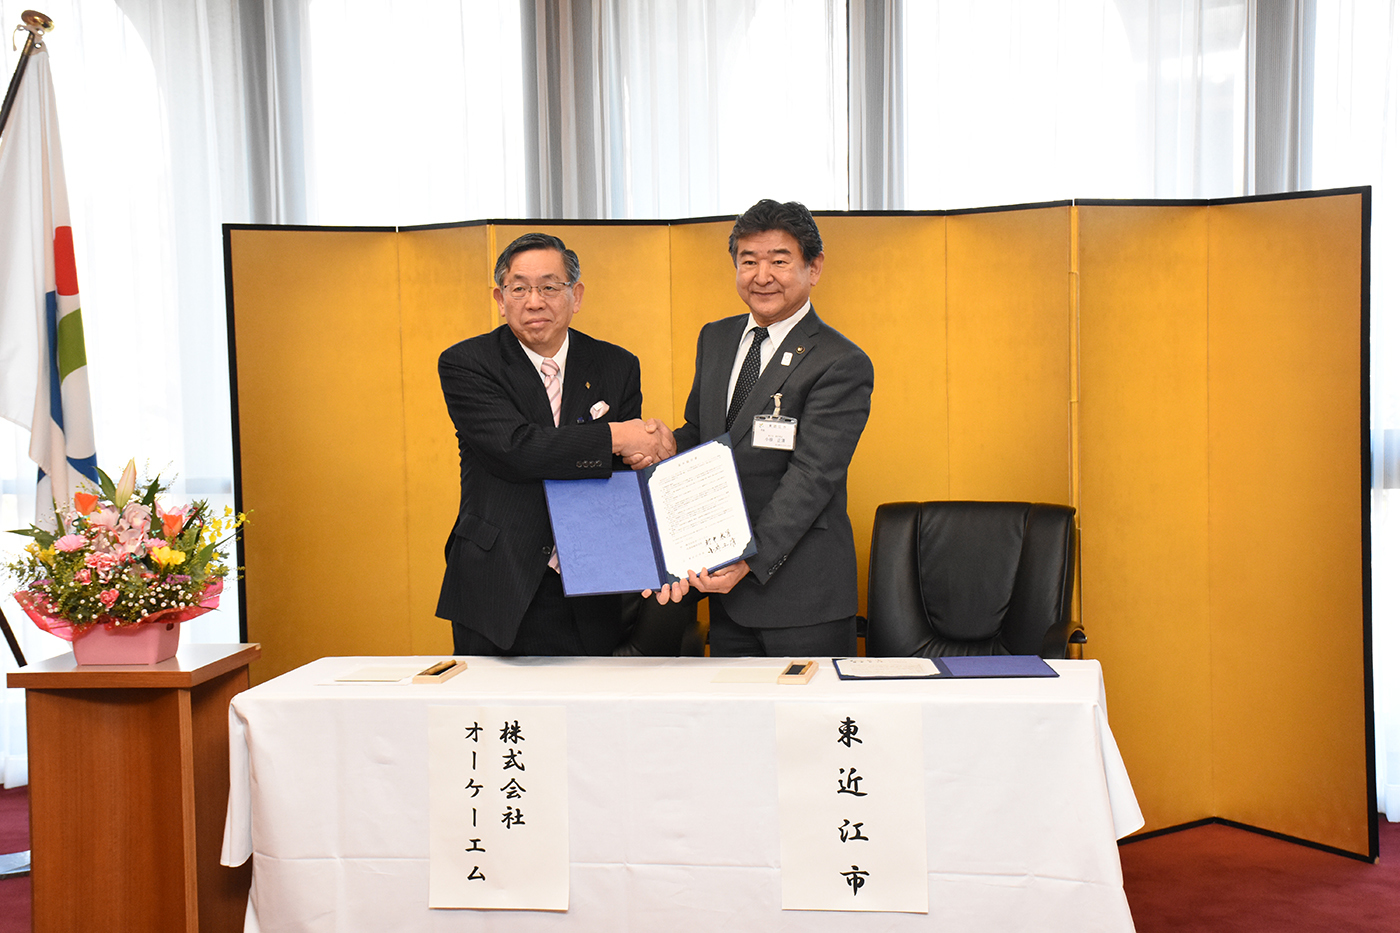 協定書にサインを終え握手する村井代表取締役会長と小椋市長